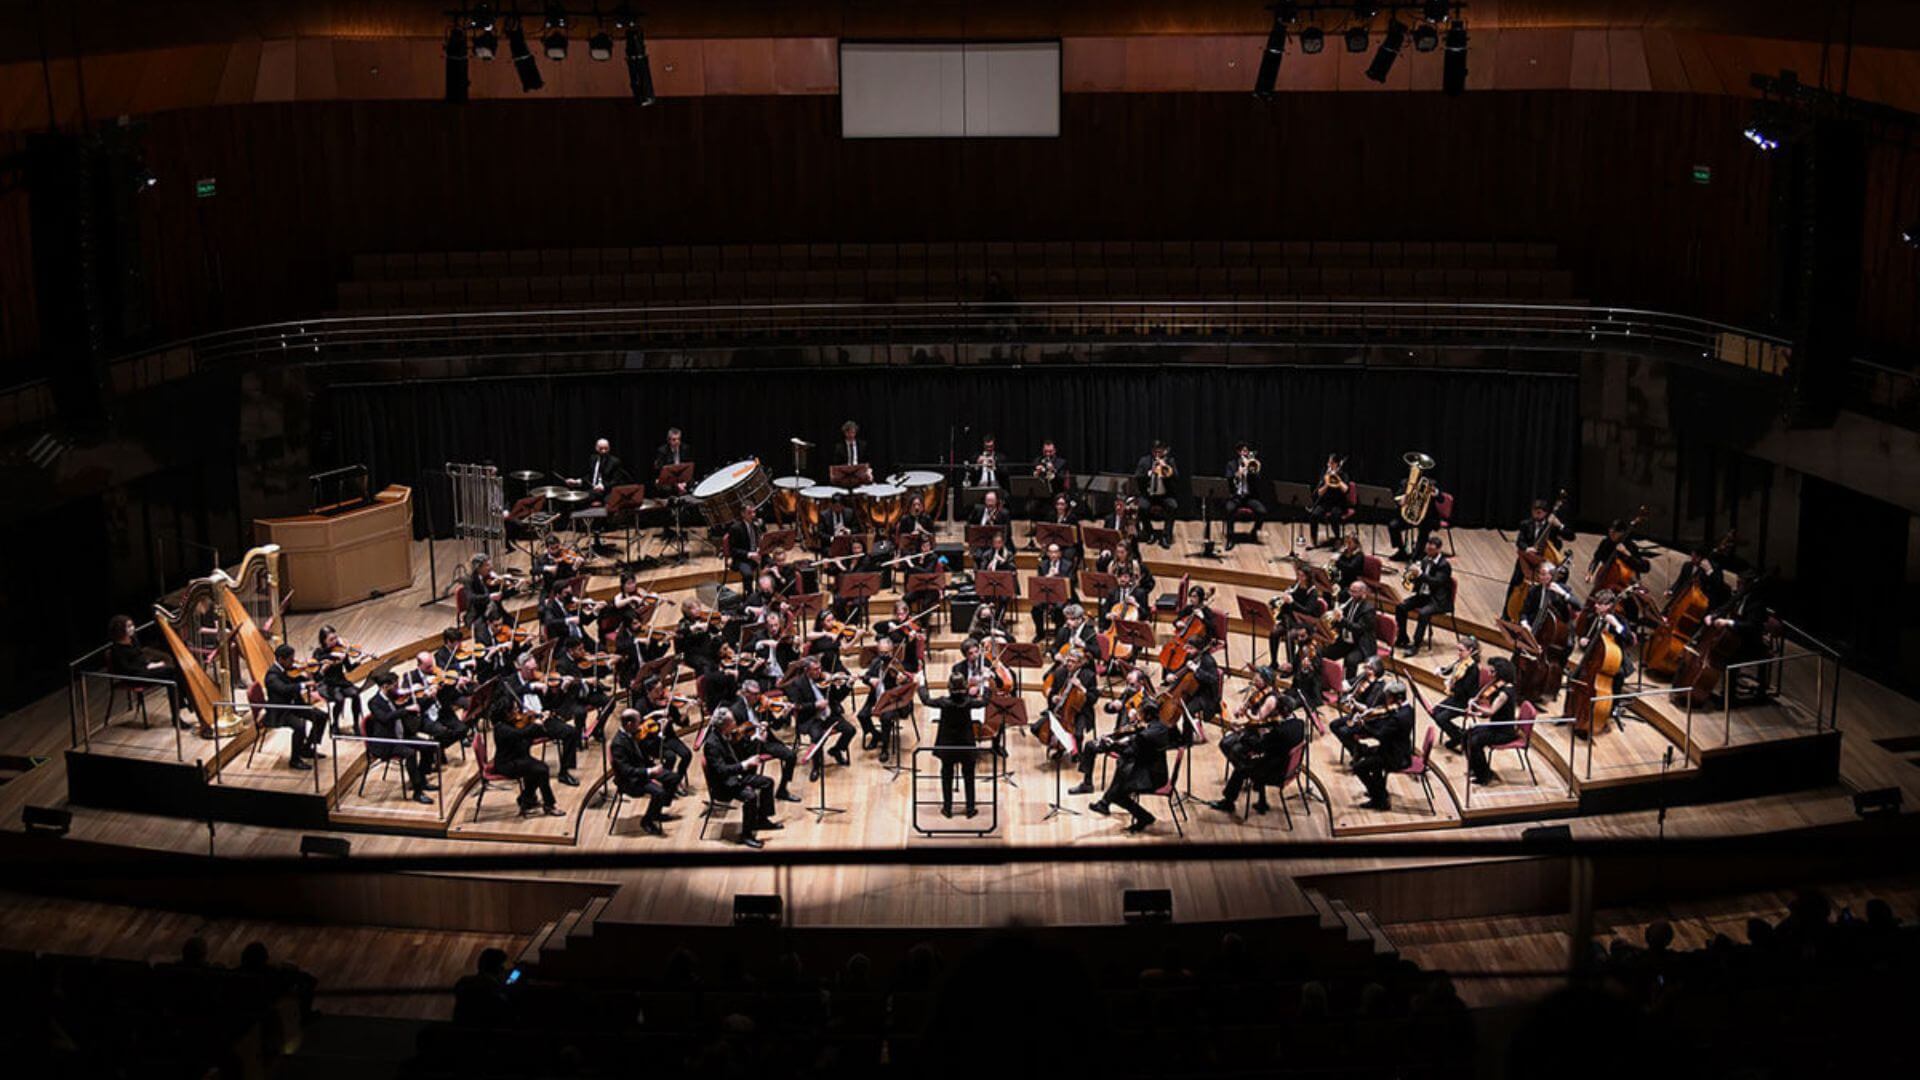 Concierto de la orquesta sinfonica nacional argentina